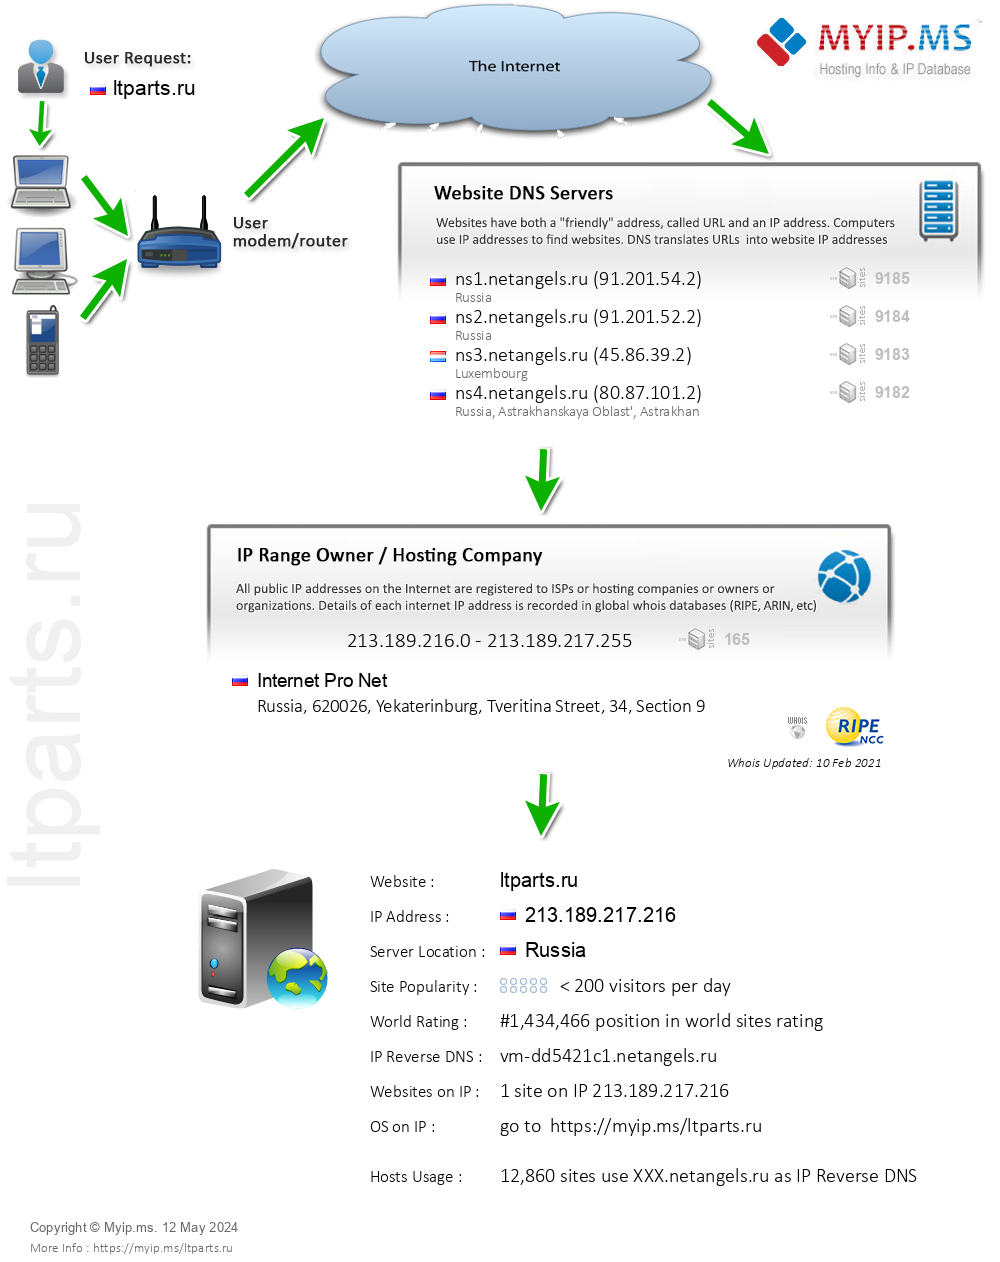 Ltparts.ru - Website Hosting Visual IP Diagram